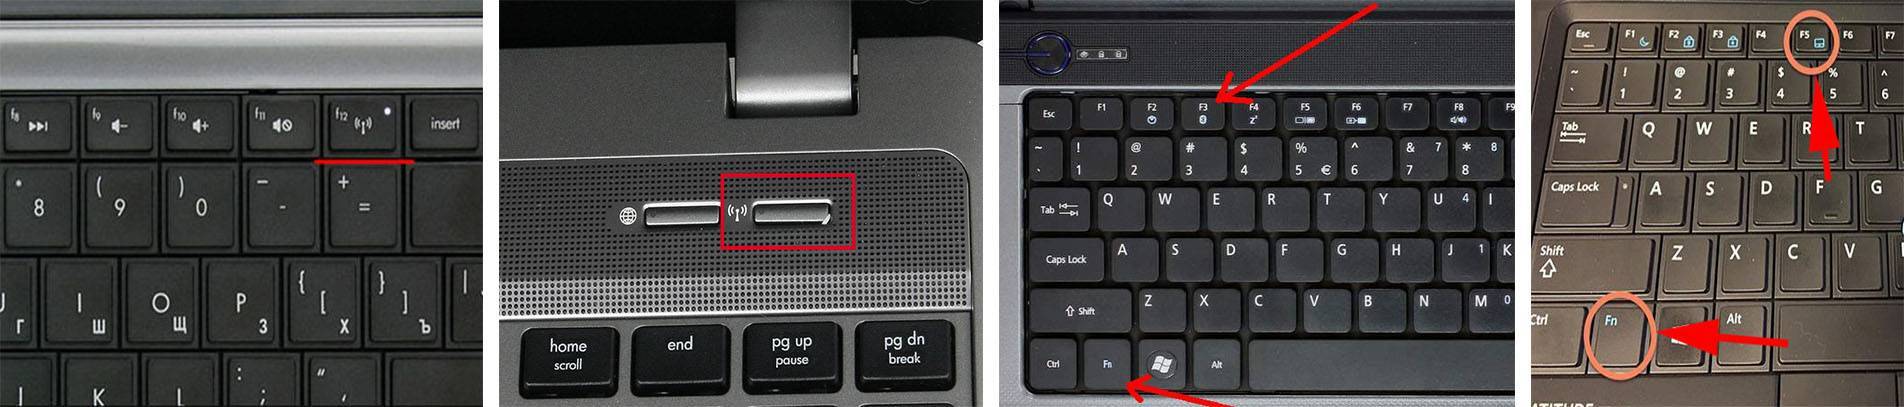 Как правильно включить вай фай на ноутбуке леново?